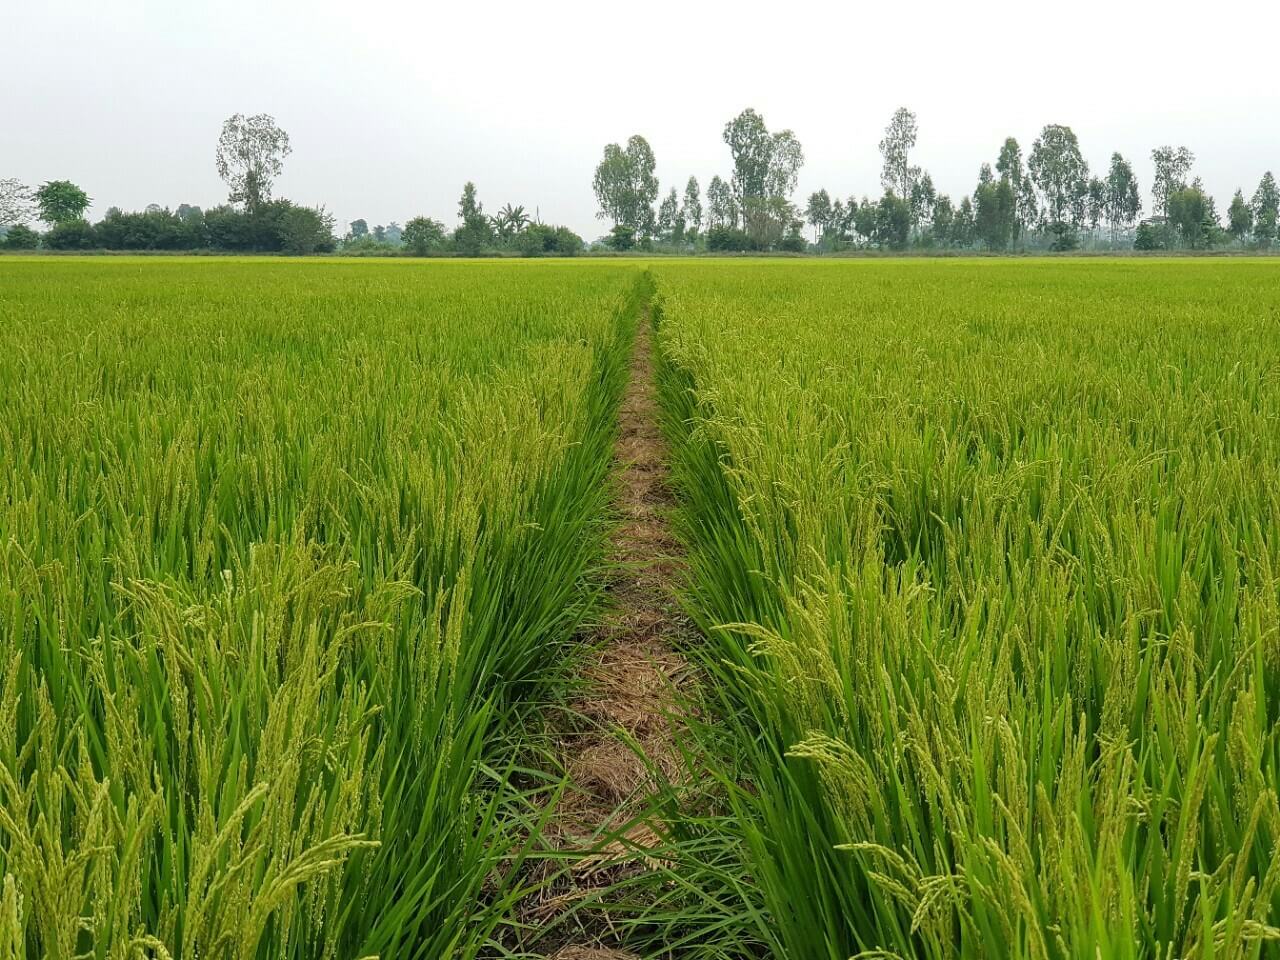 Chuyển đất lúa sang đất nông nghiệp khác có được không?